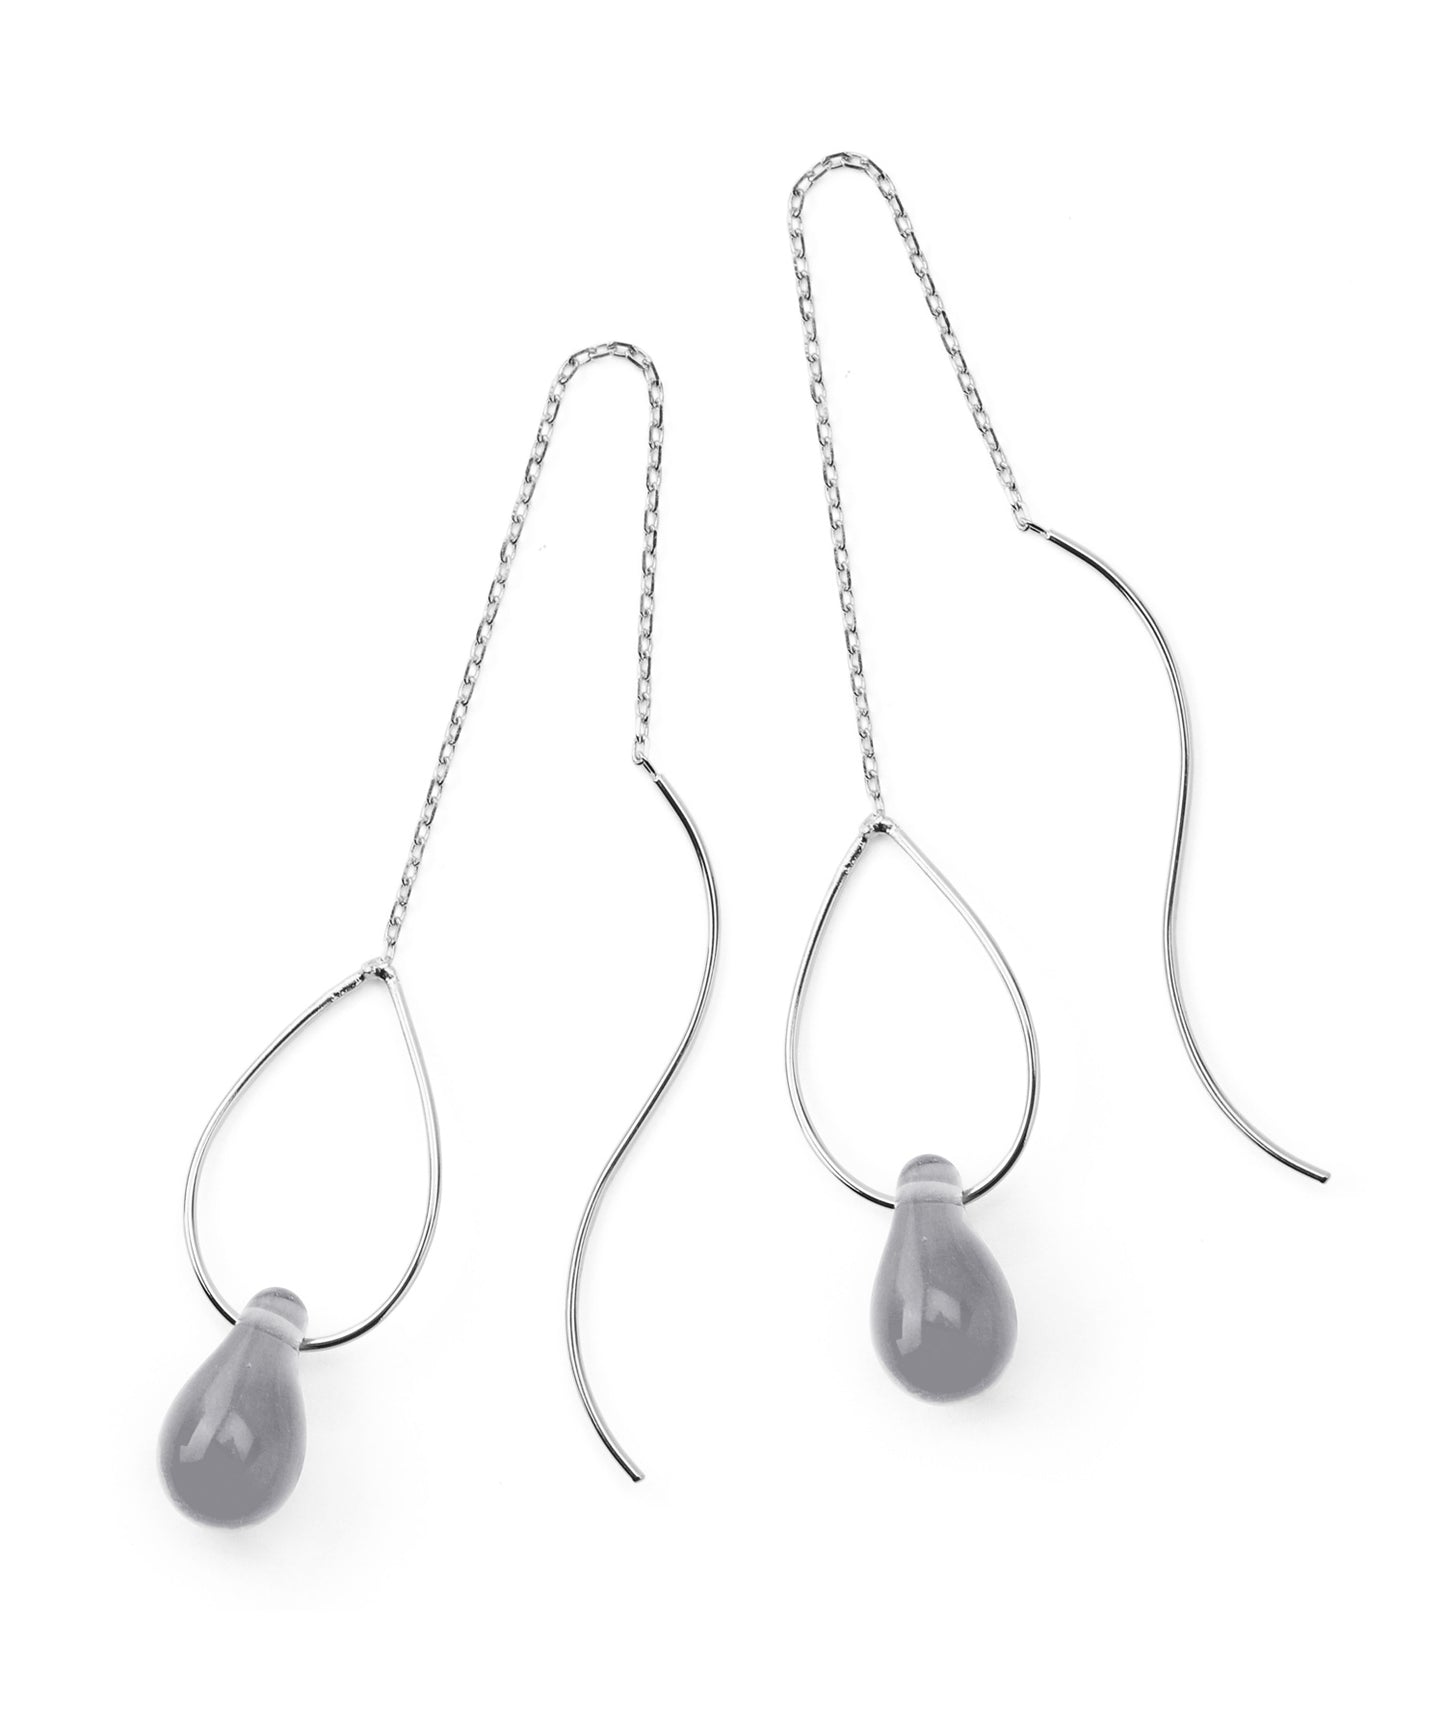 Glass Motif Earrings[A][Sheerchic]